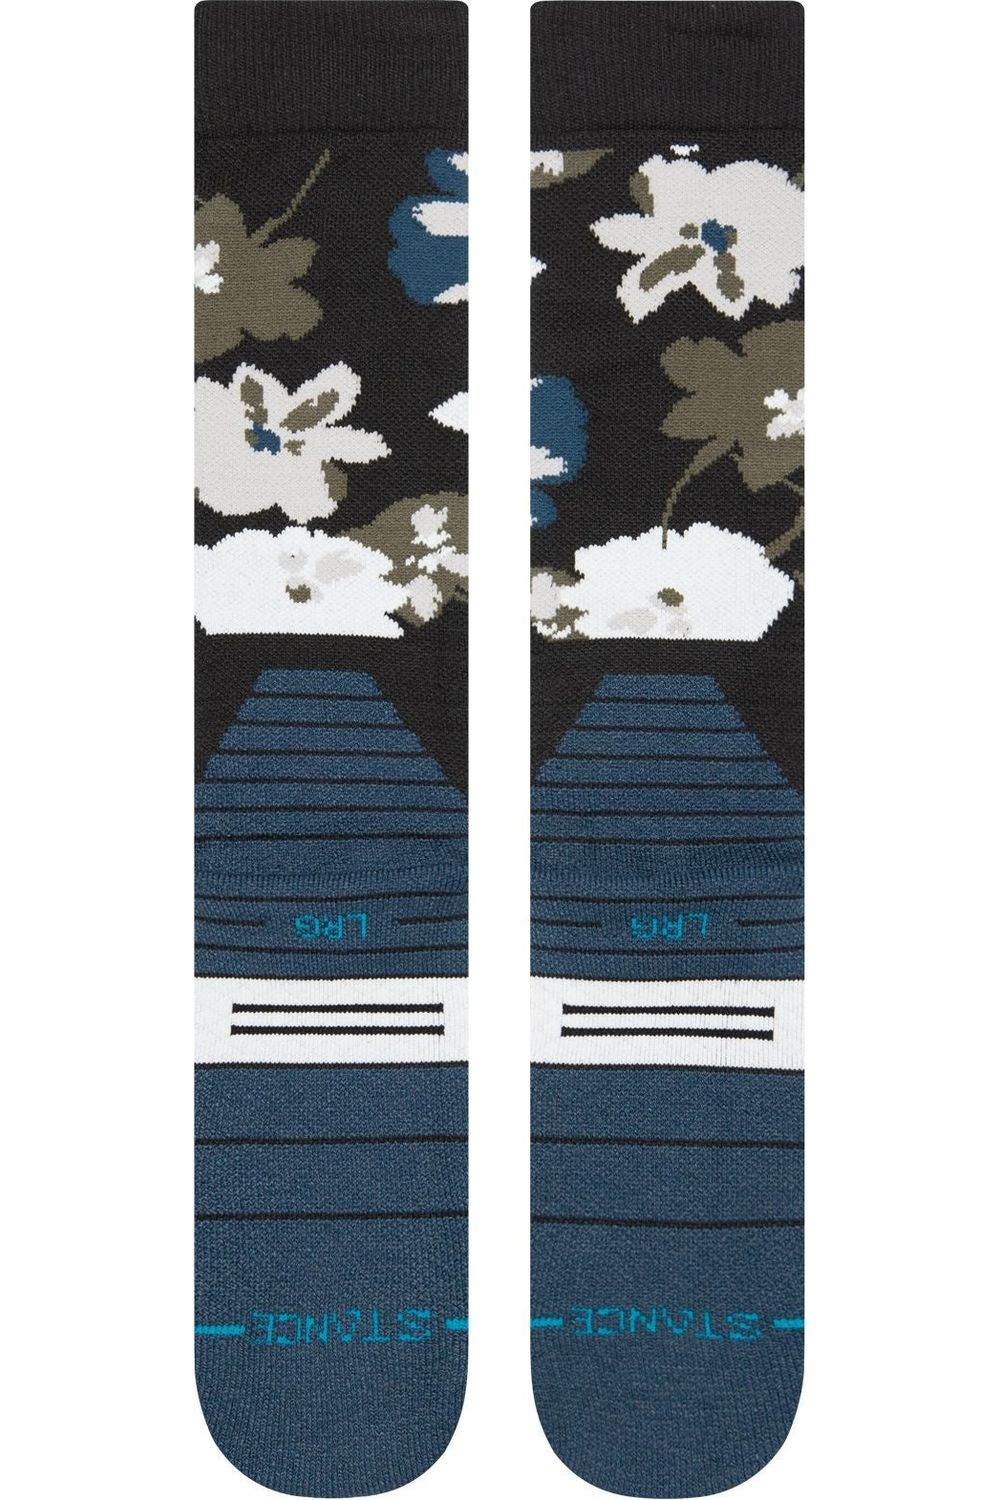 Stance Fields Snow Socks